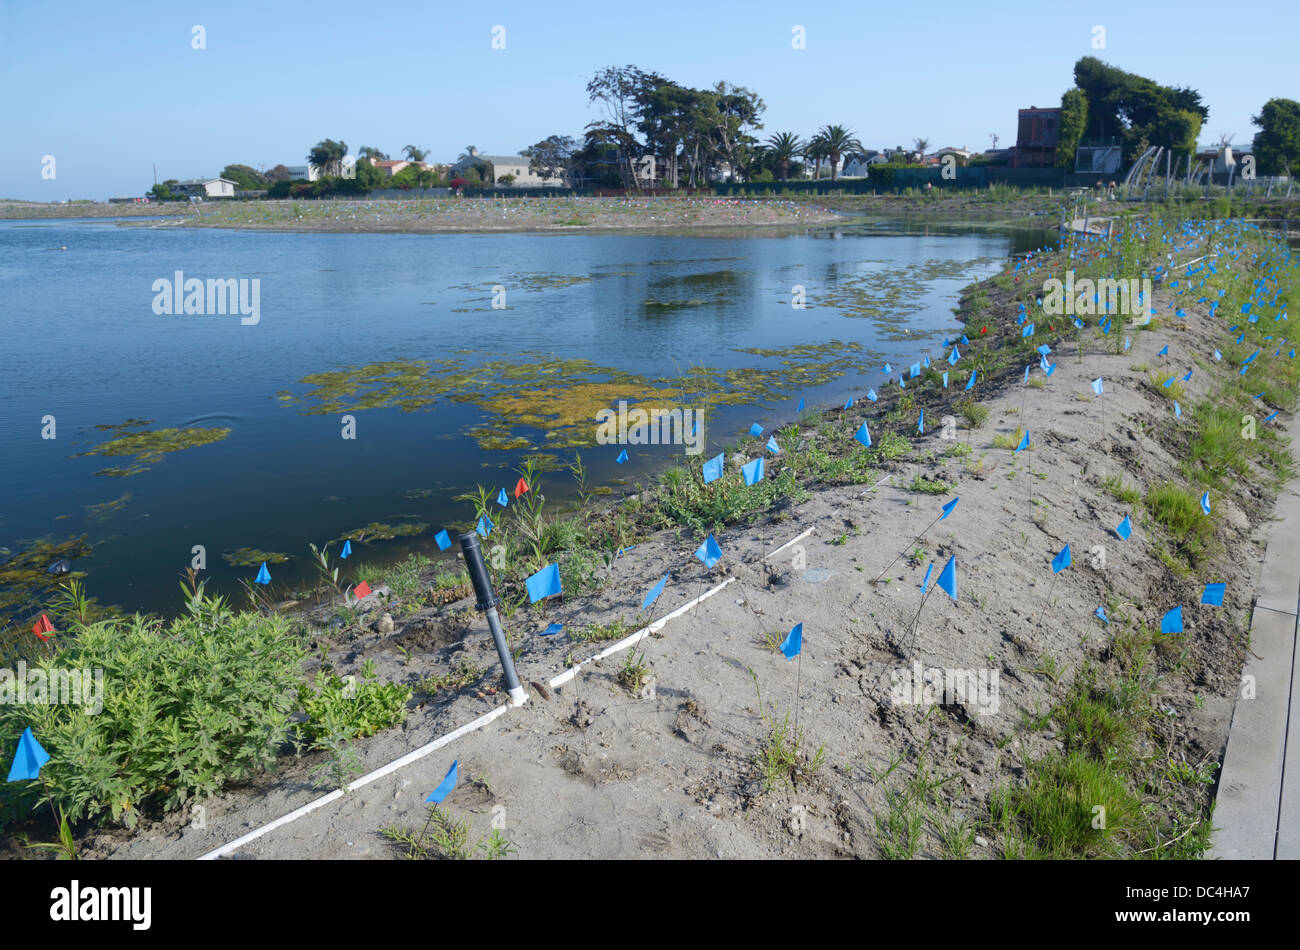 Malibu Lagoon Projet de restauration. Un groupe réunissant divers organismes s'efforce d'améliorer la santé écologique de l'estuaire (voir description) Banque D'Images